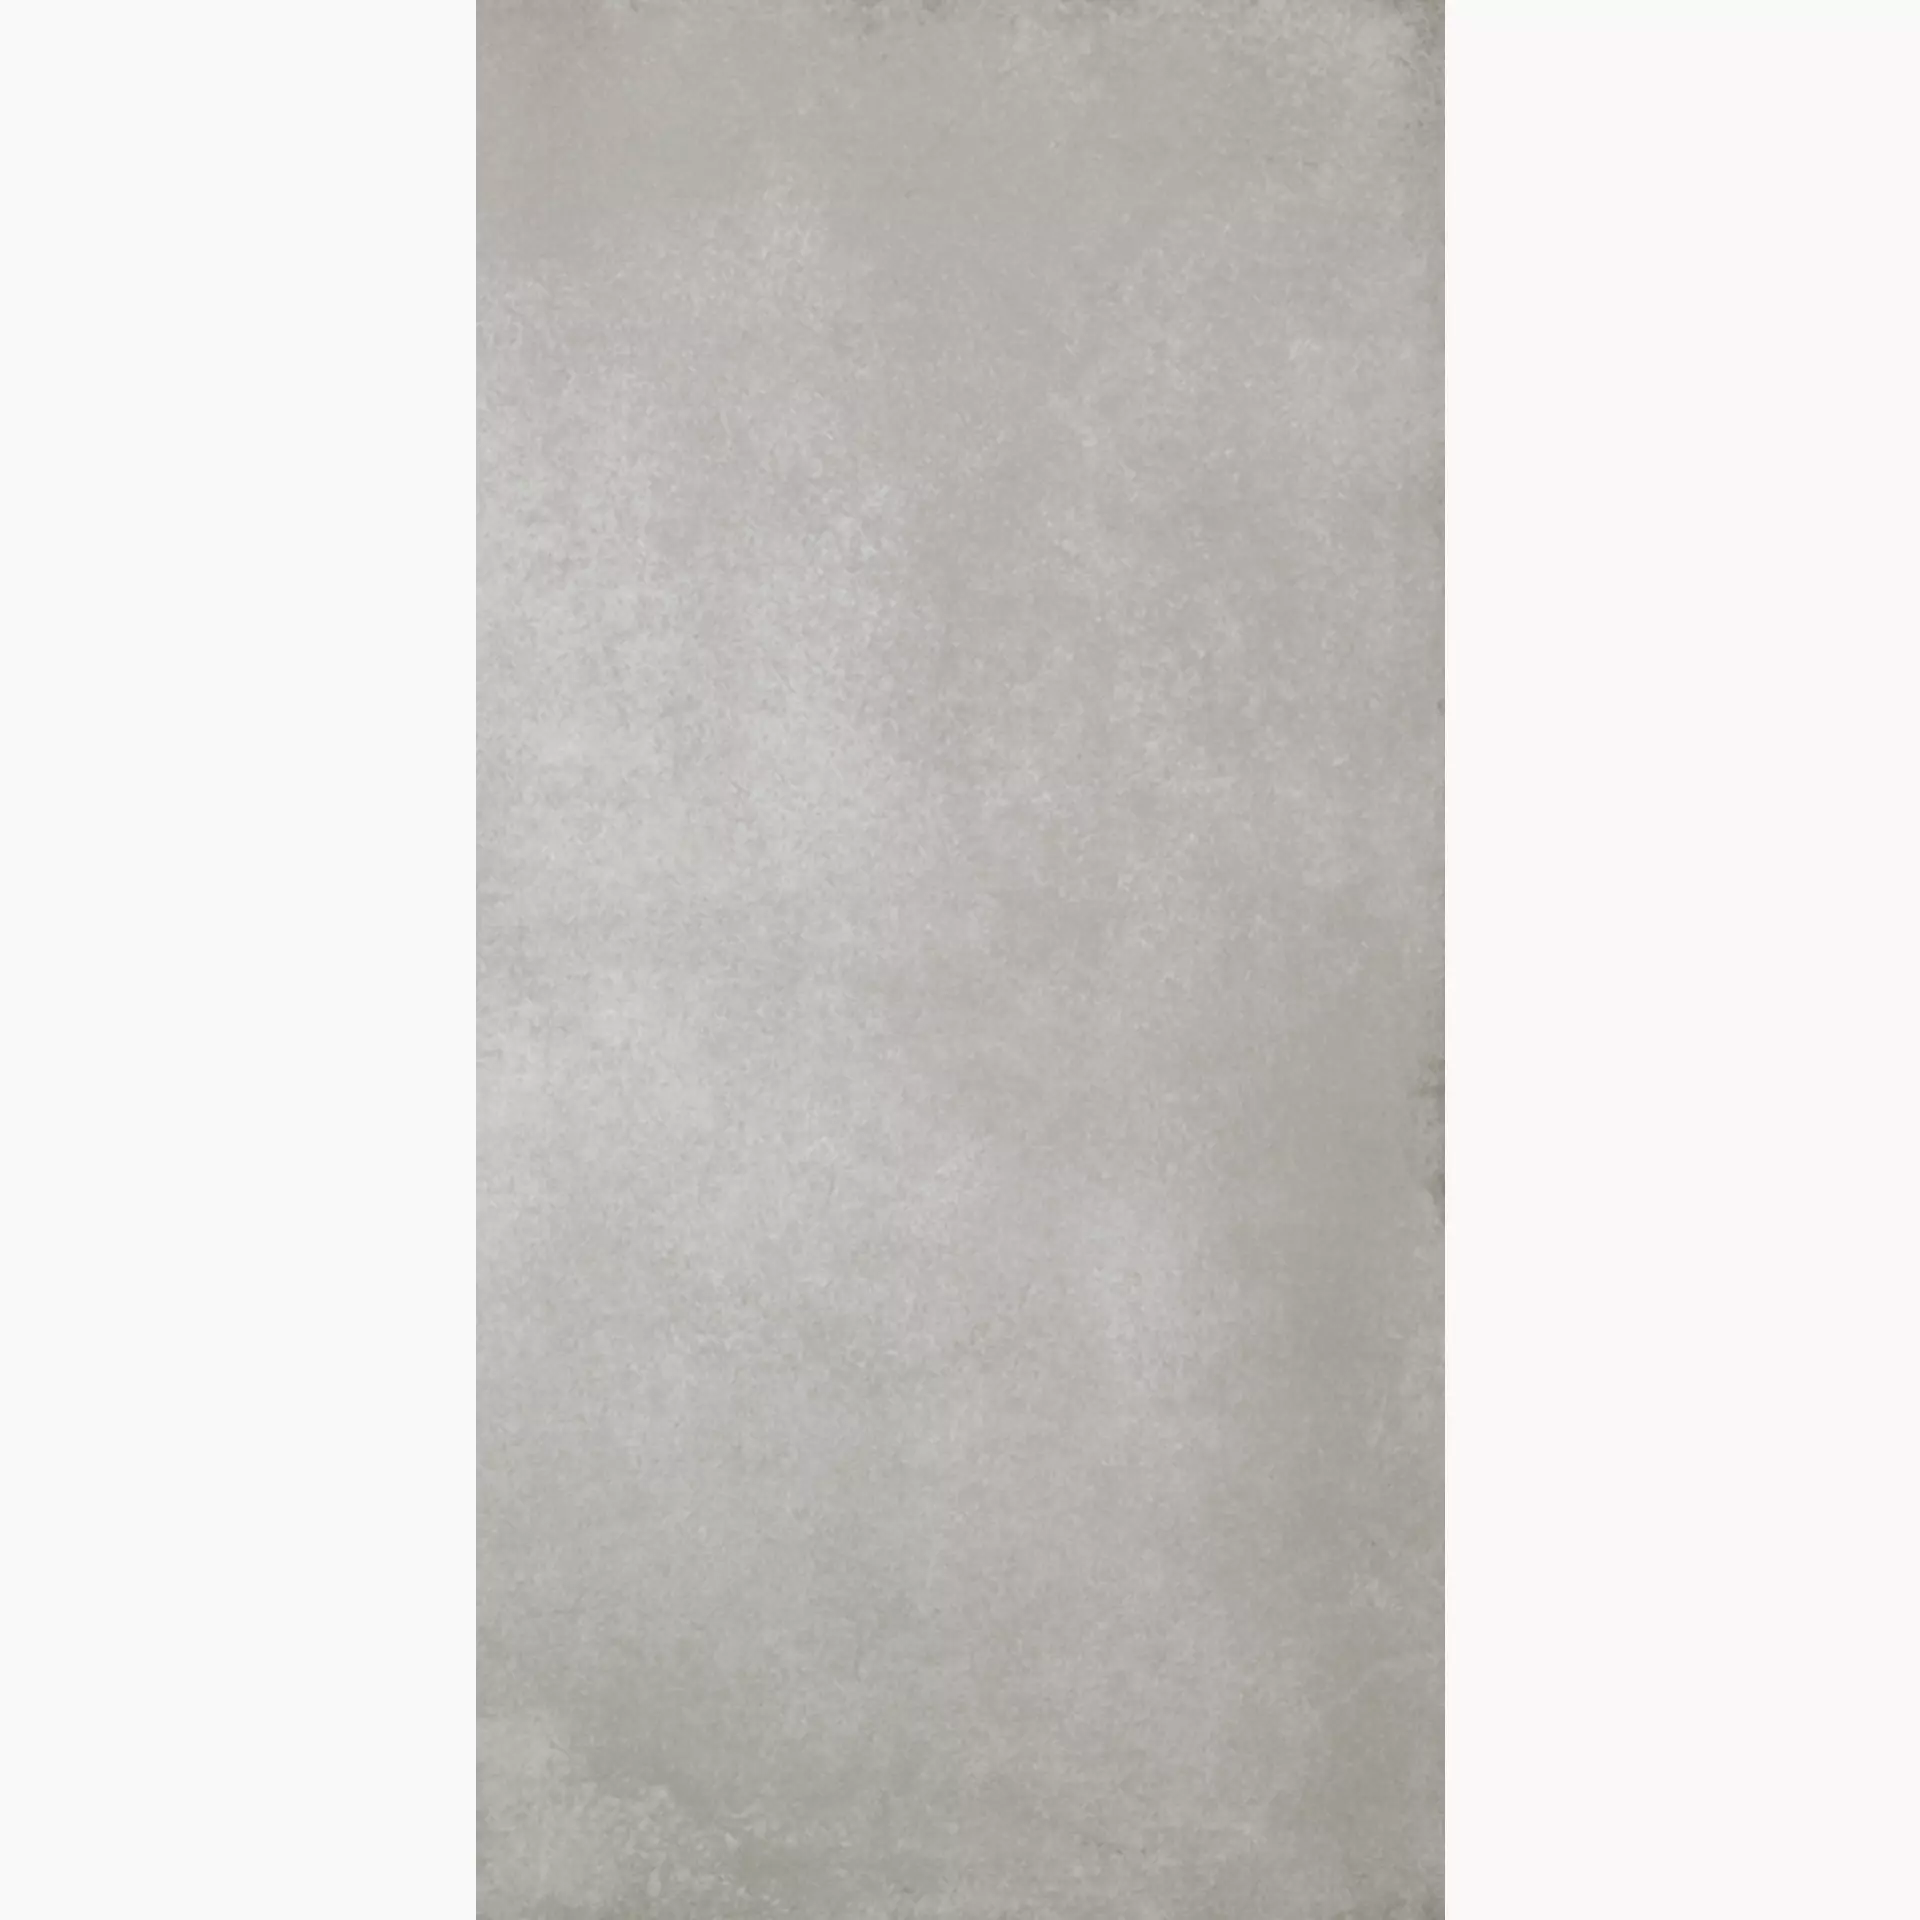 Wandfliese,Bodenfliese Villeroy & Boch Section Cement Grey Matt Cement Grey 2085-SZ60 matt 30x60cm rektifiziert 10mm